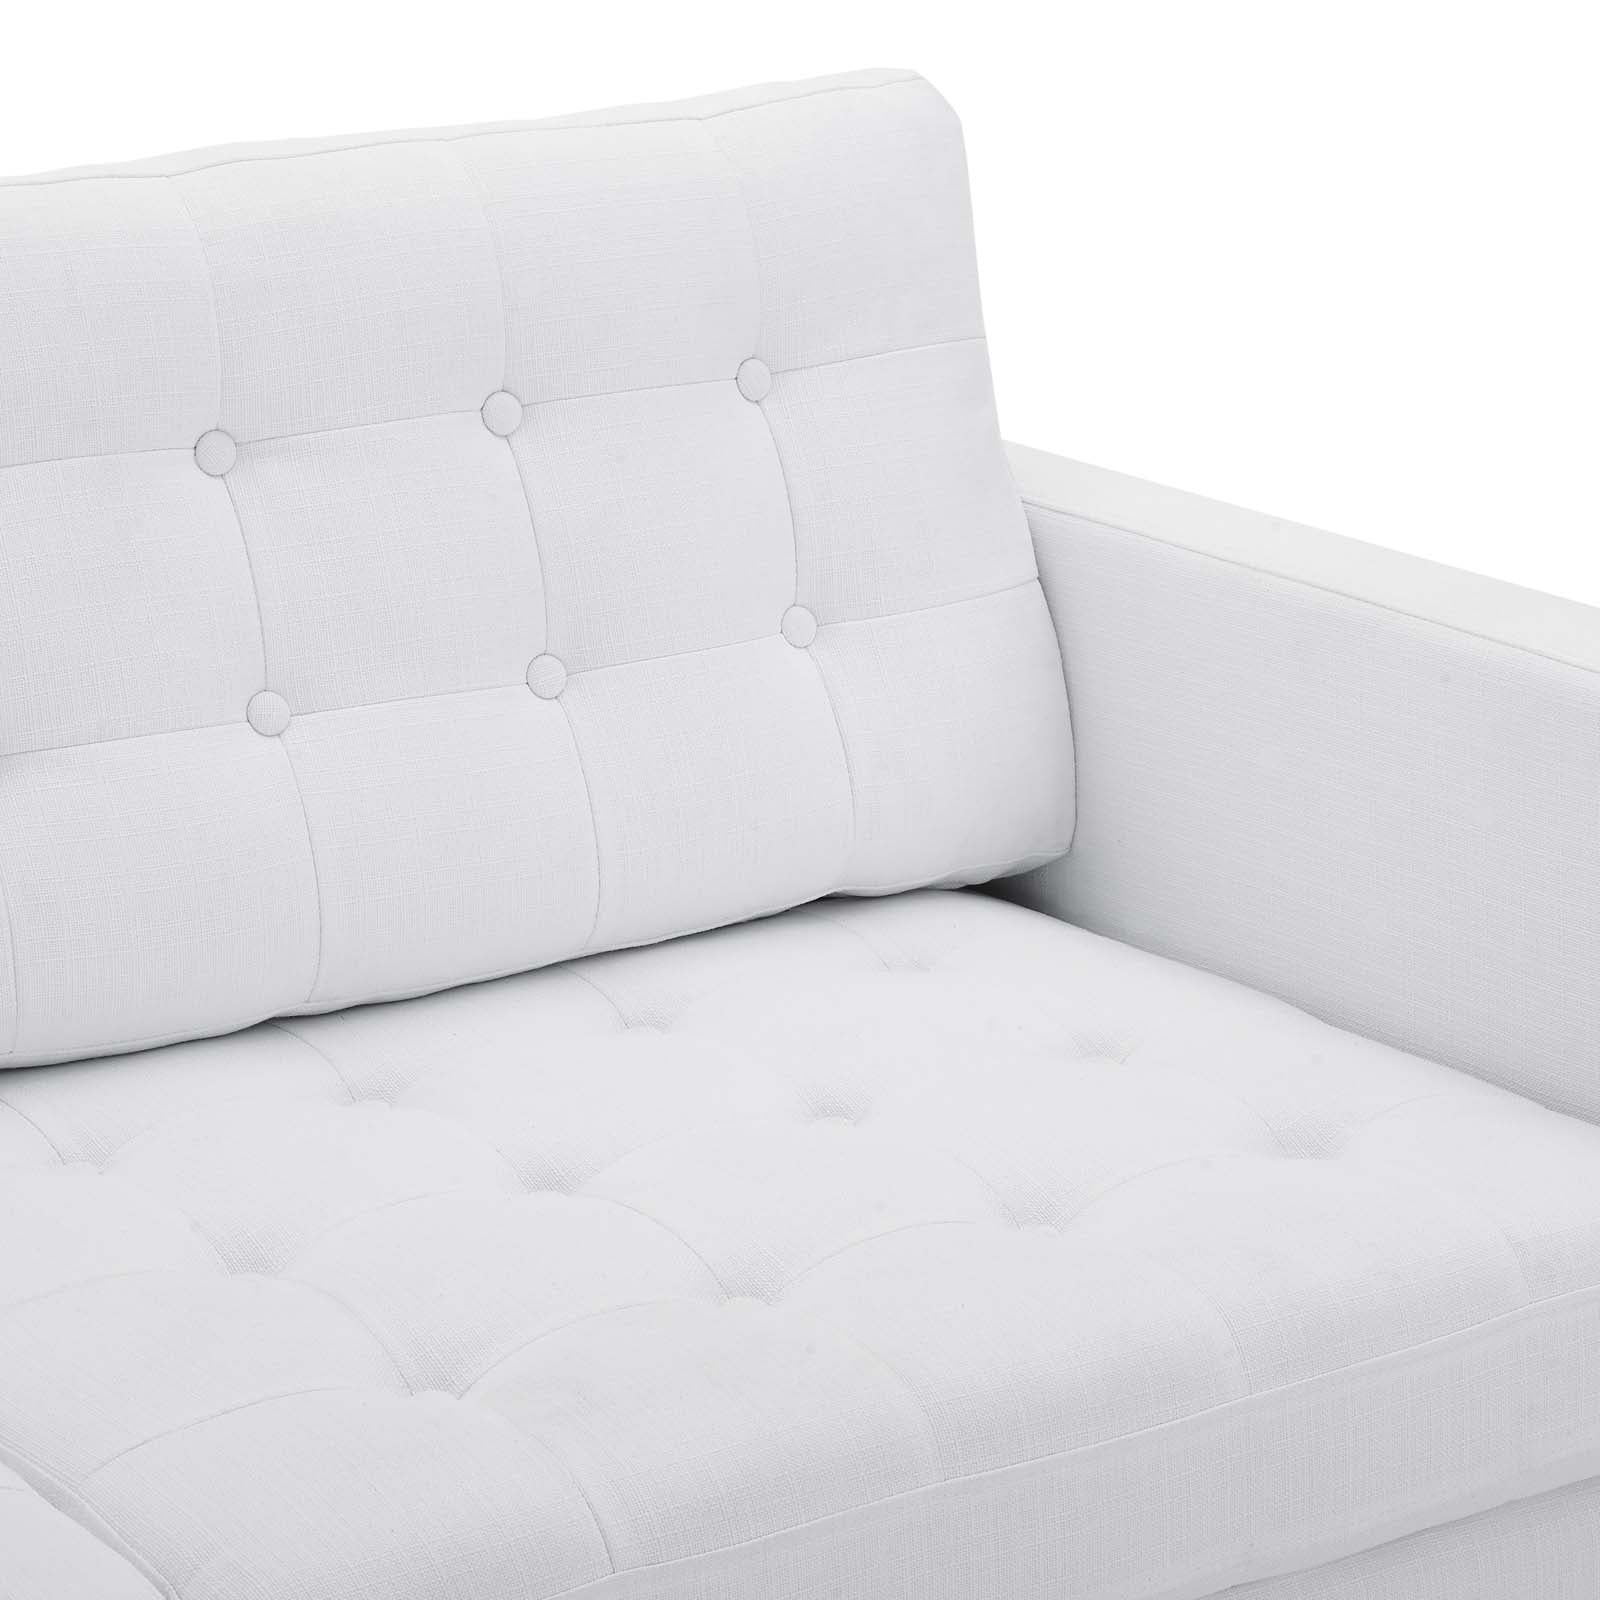 Modway Sofas & Couches - Exalt Tufted Fabric Sofa White